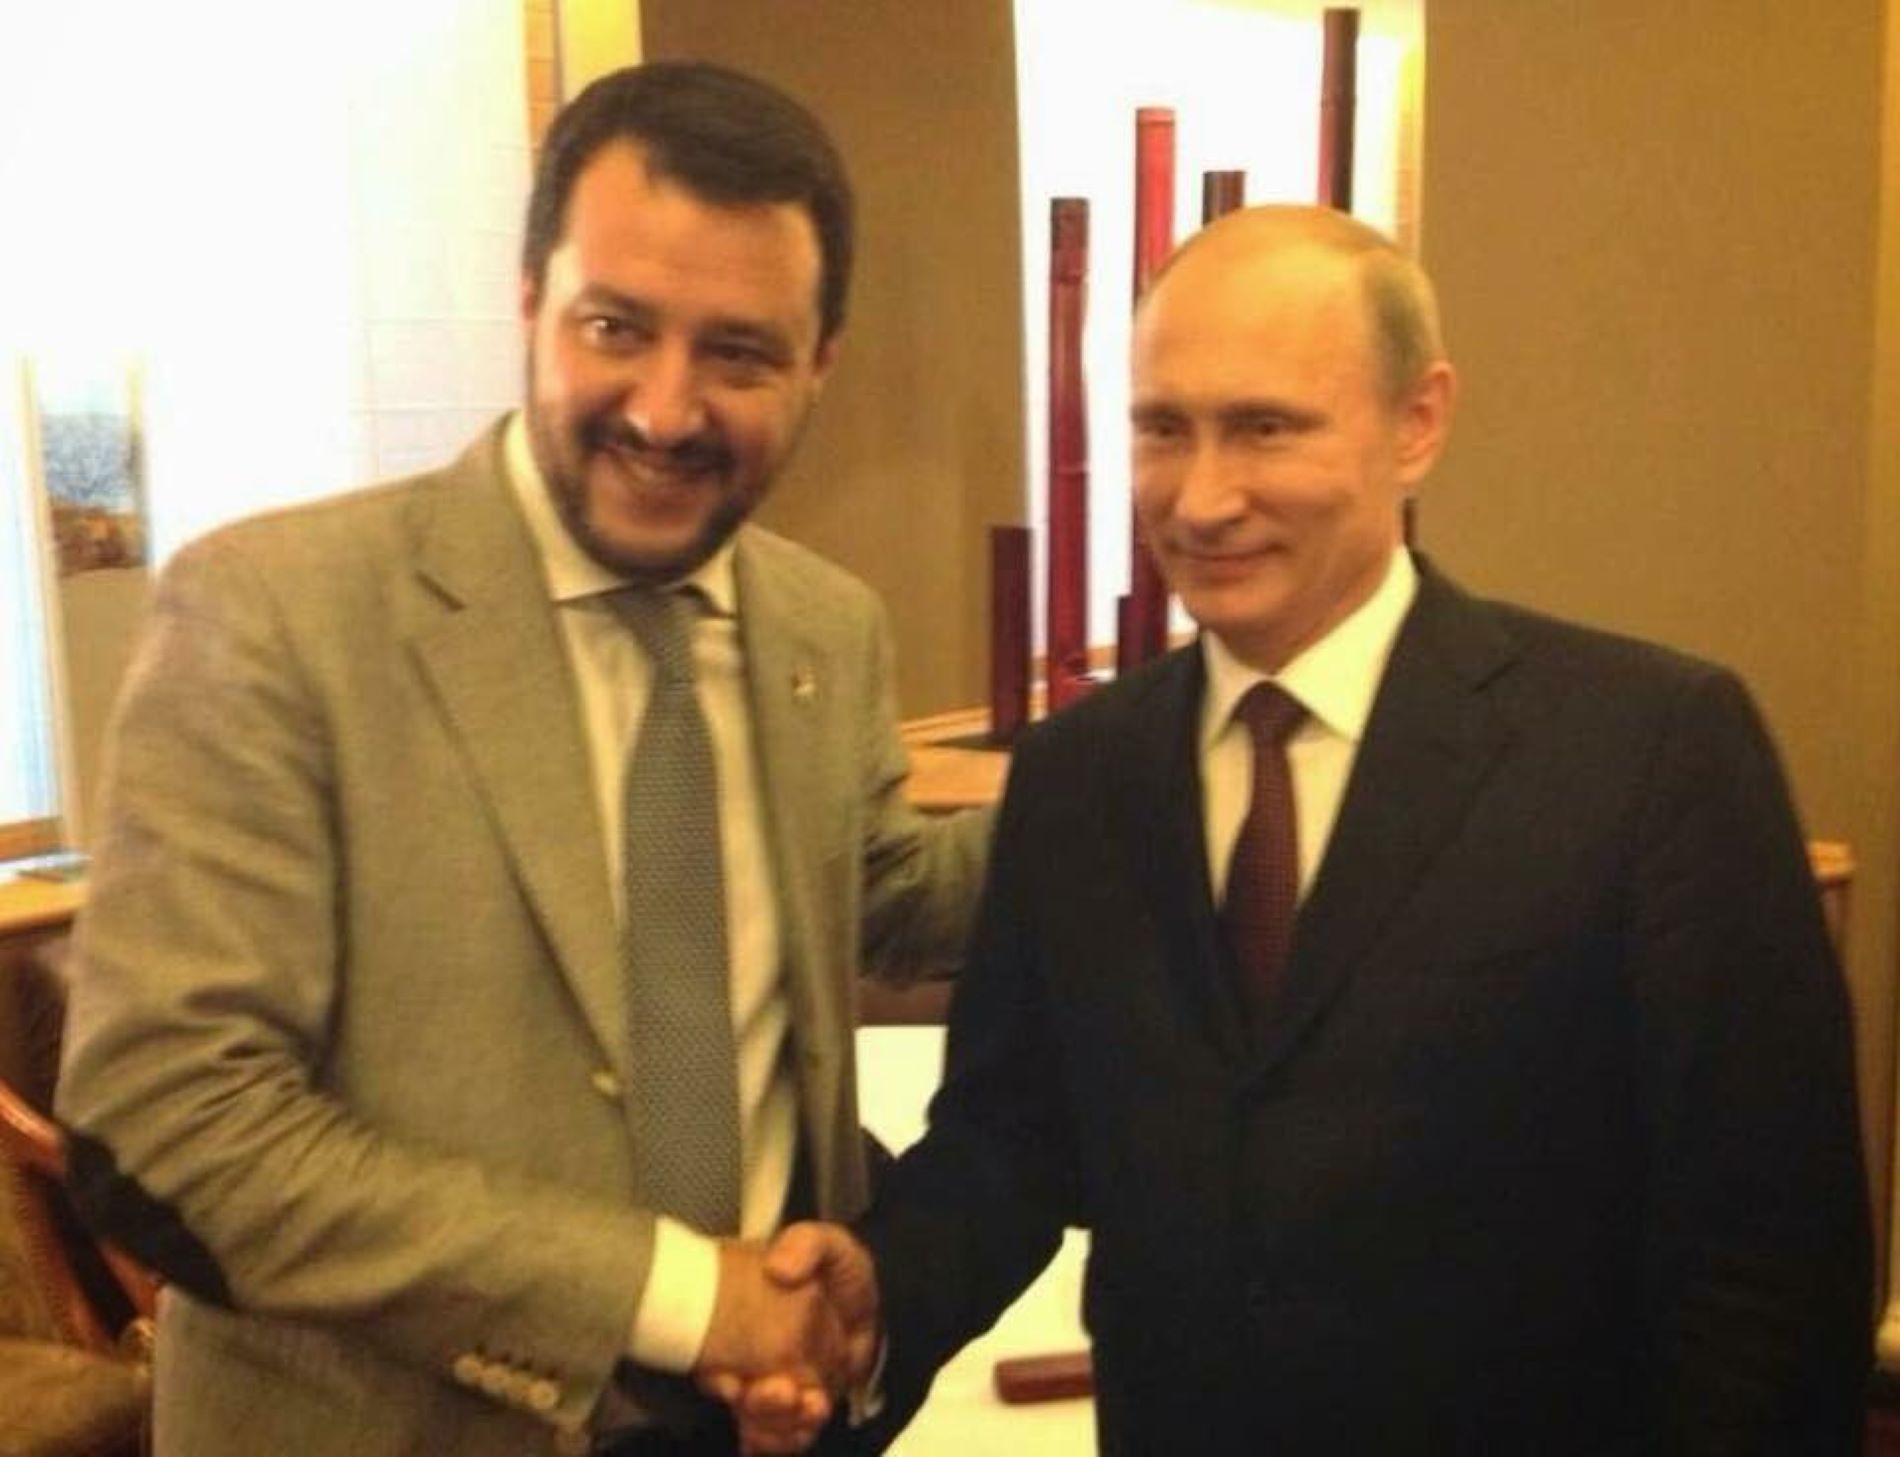 Rusia contactó a Matteo Salvini para hacer caer el gobierno de Italia, según una investigación